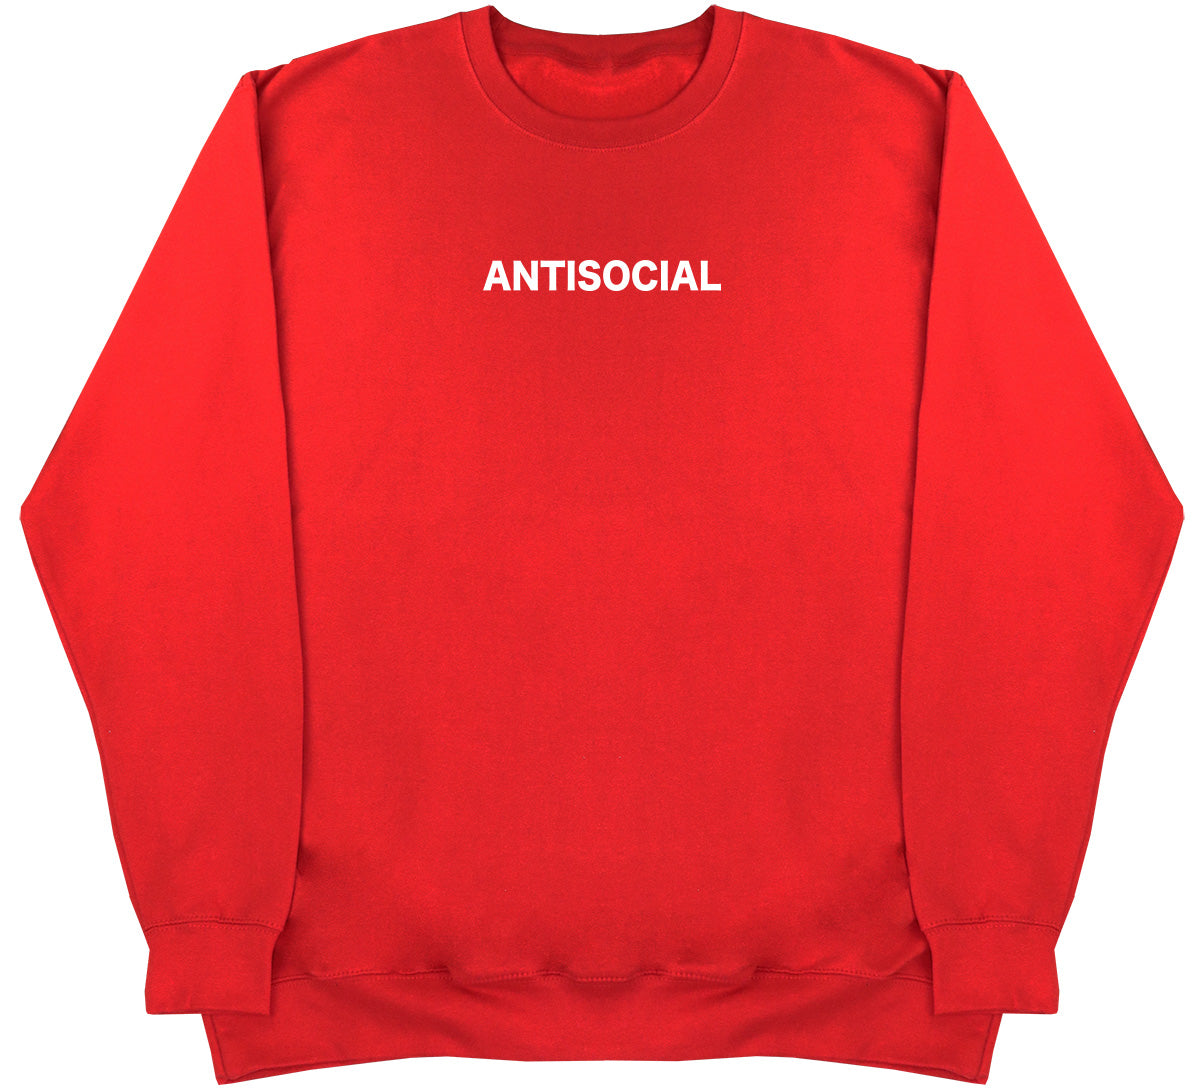 Antisocial - Huge Oversized Comfy Original Sweater